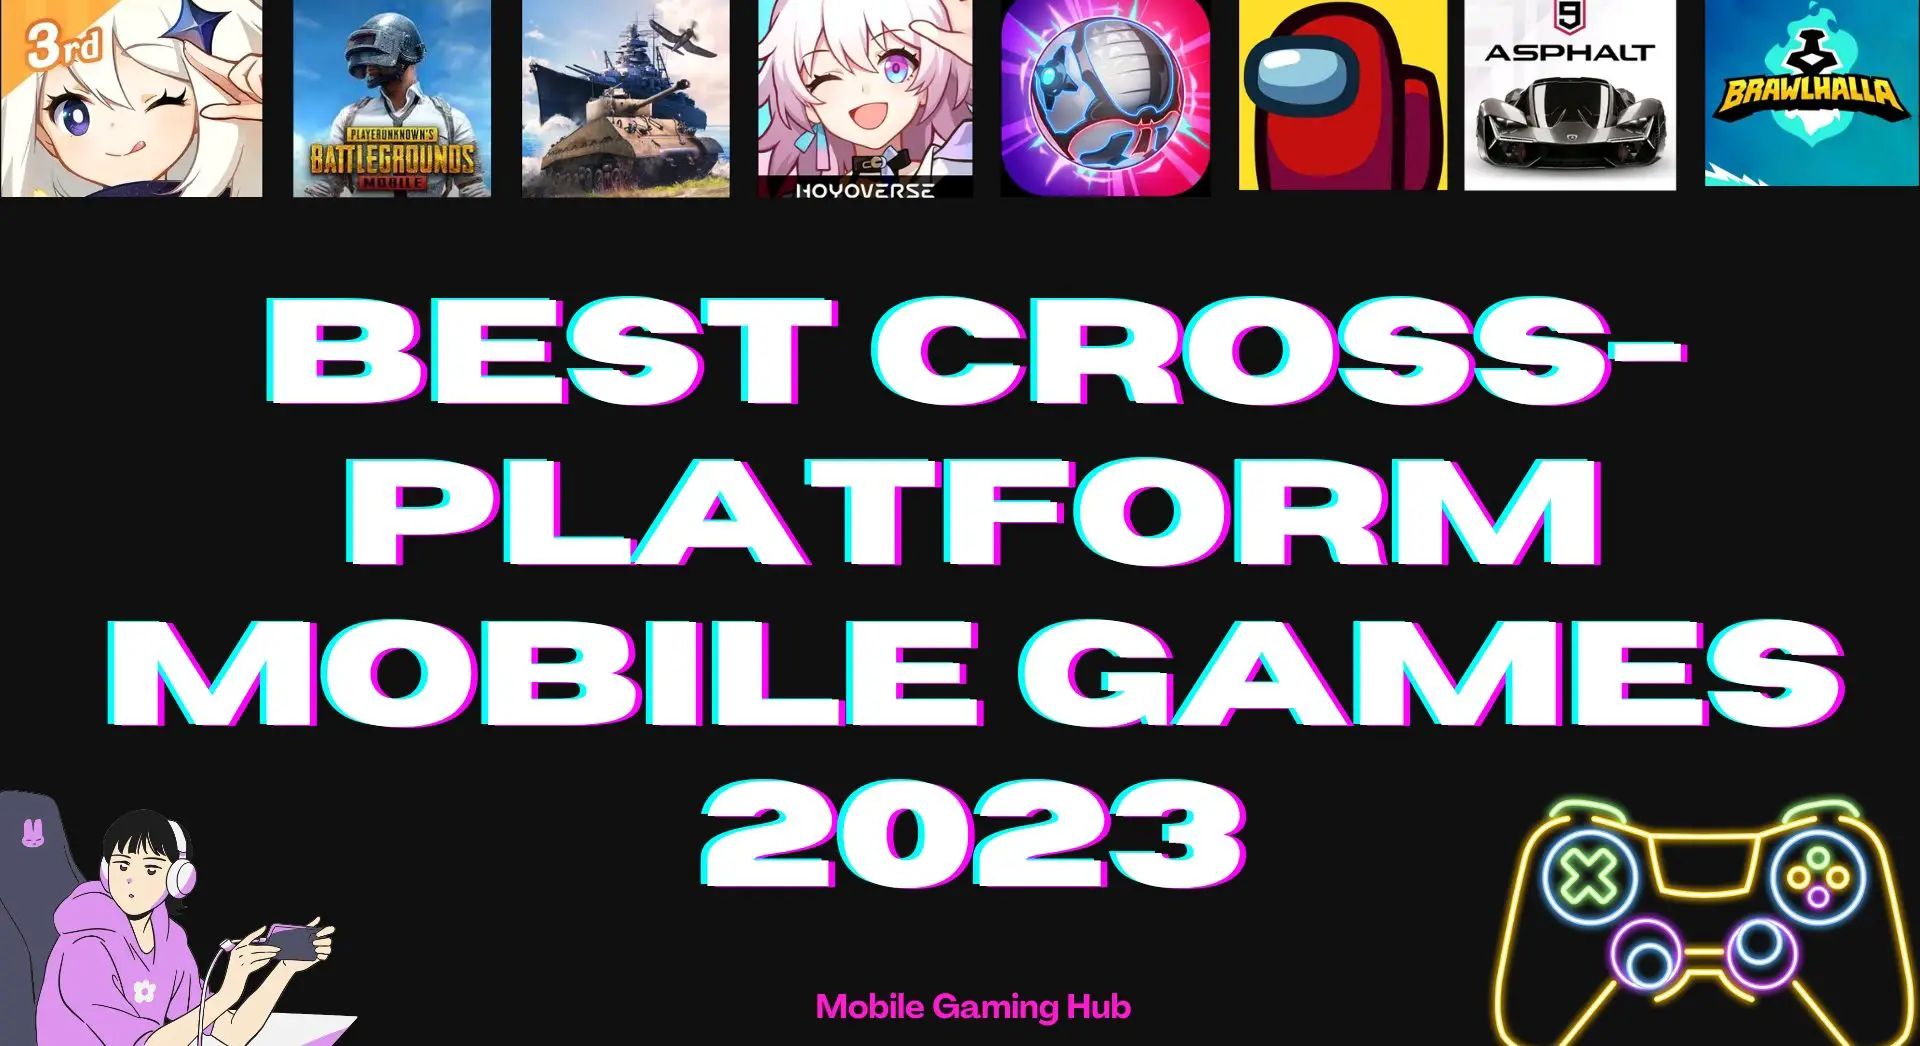 I migliori giochi mobile multipiattaforma da provare nel 2023